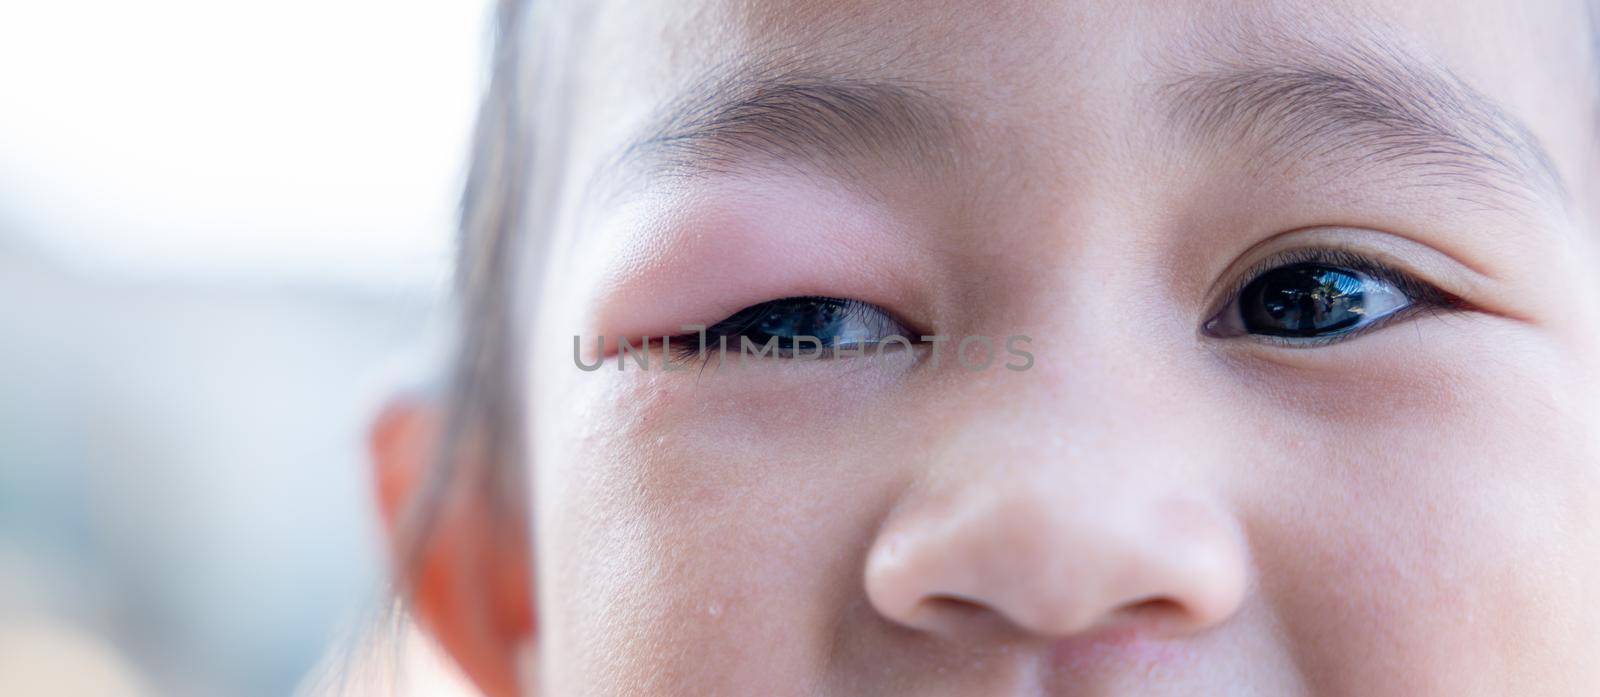 Closed Asian kid little girl eye with sty by Sorapop